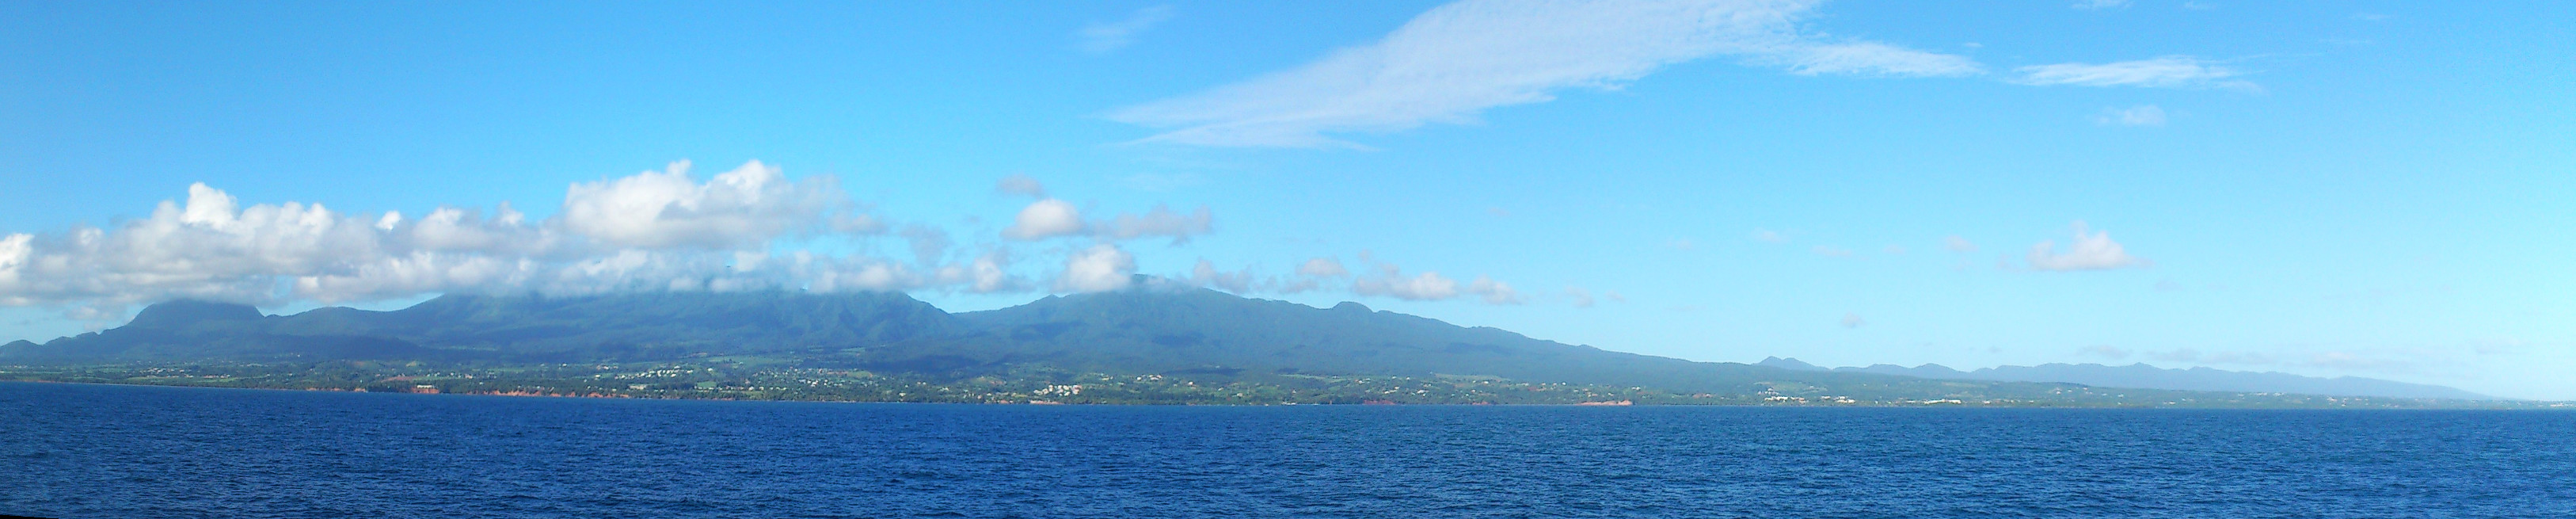 Vue sur l'île de Basse Terre depuis le bateau